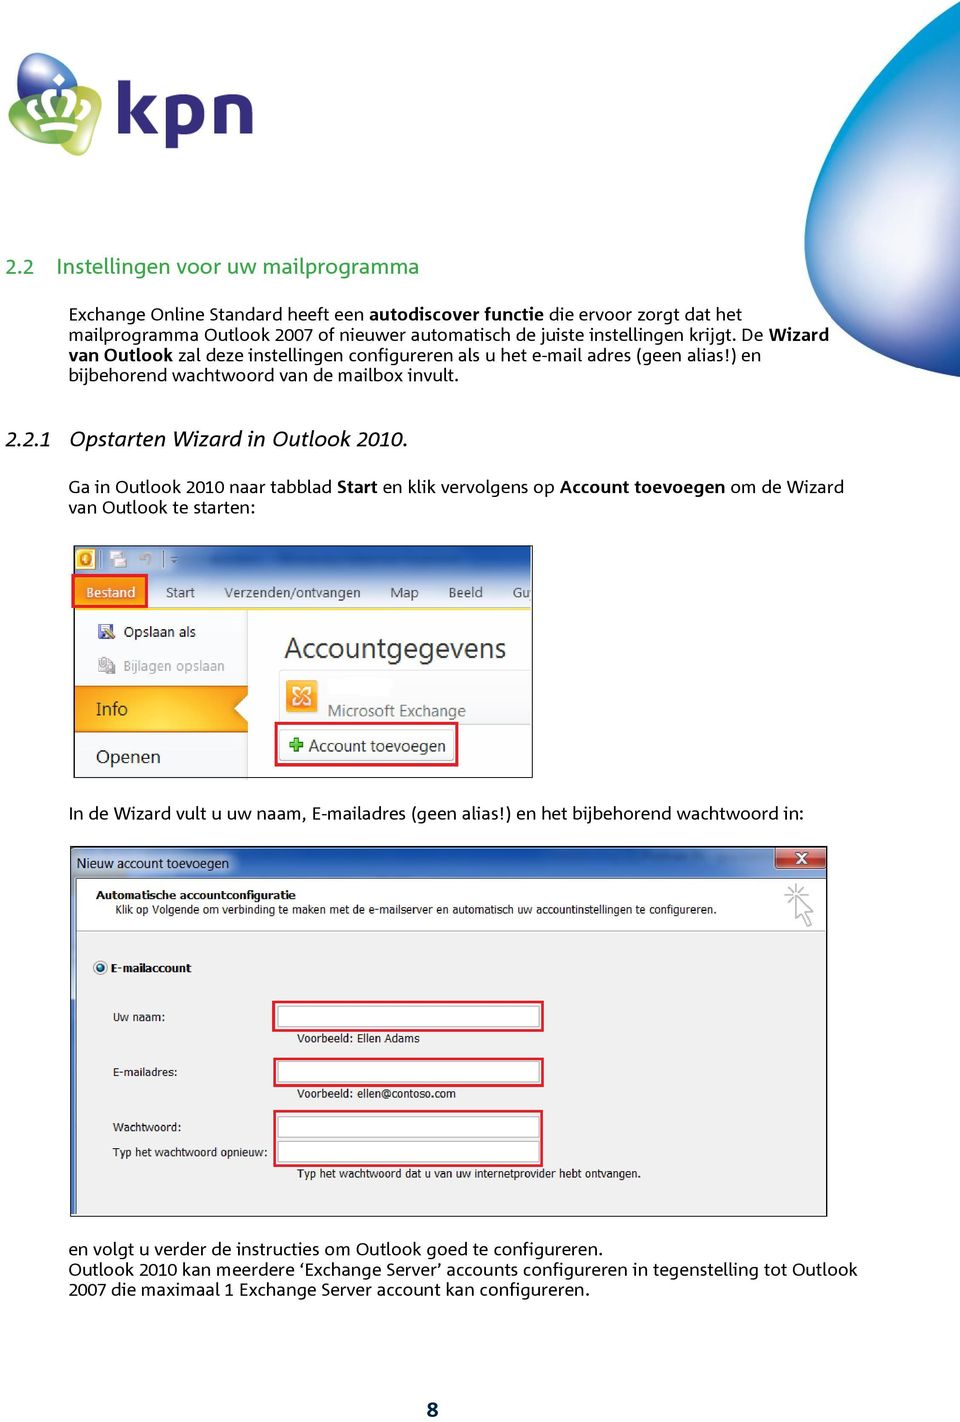 Ga in Outlook 2010 naar tabblad Start en klik vervolgens op Account toevoegen om de Wizard van Outlook te starten: In de Wizard vult u uw naam, E-mailadres (geen alias!